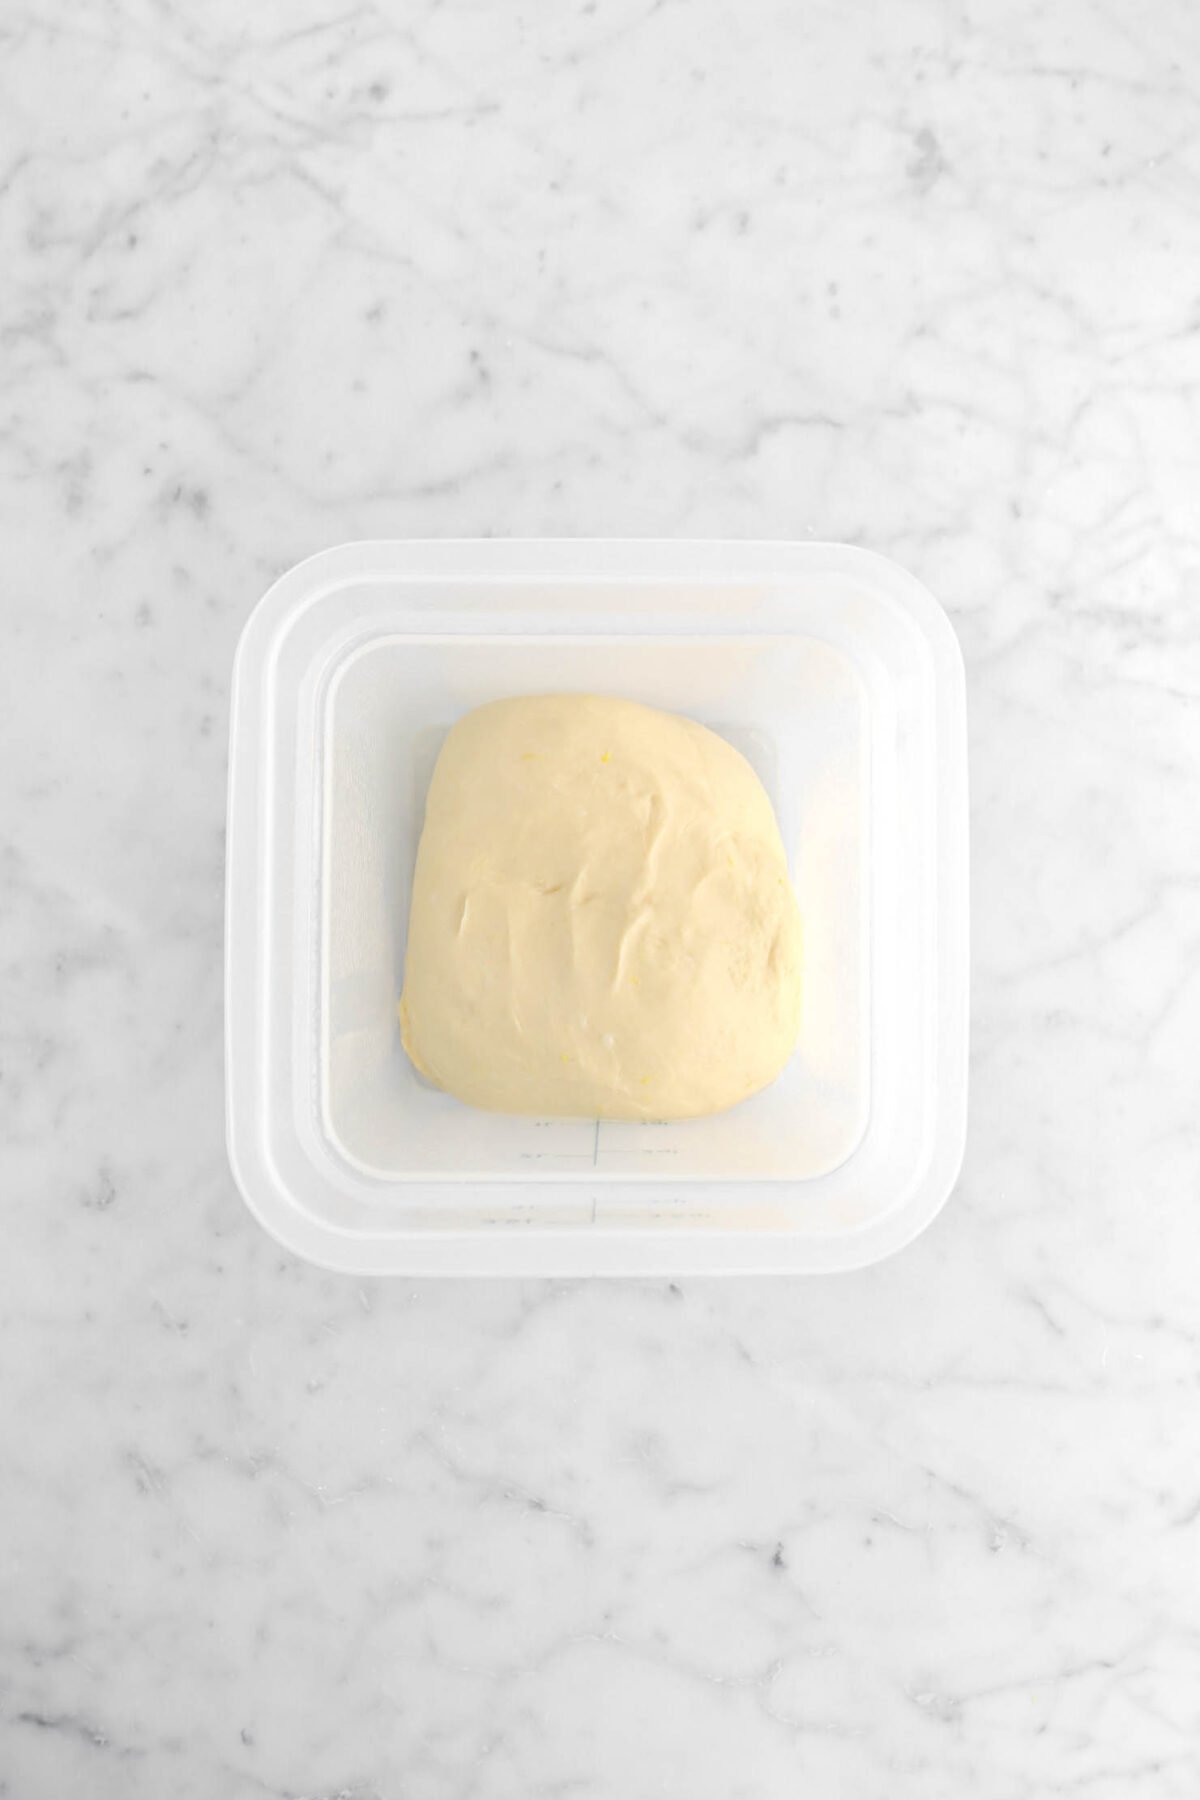 dough in plastic container.